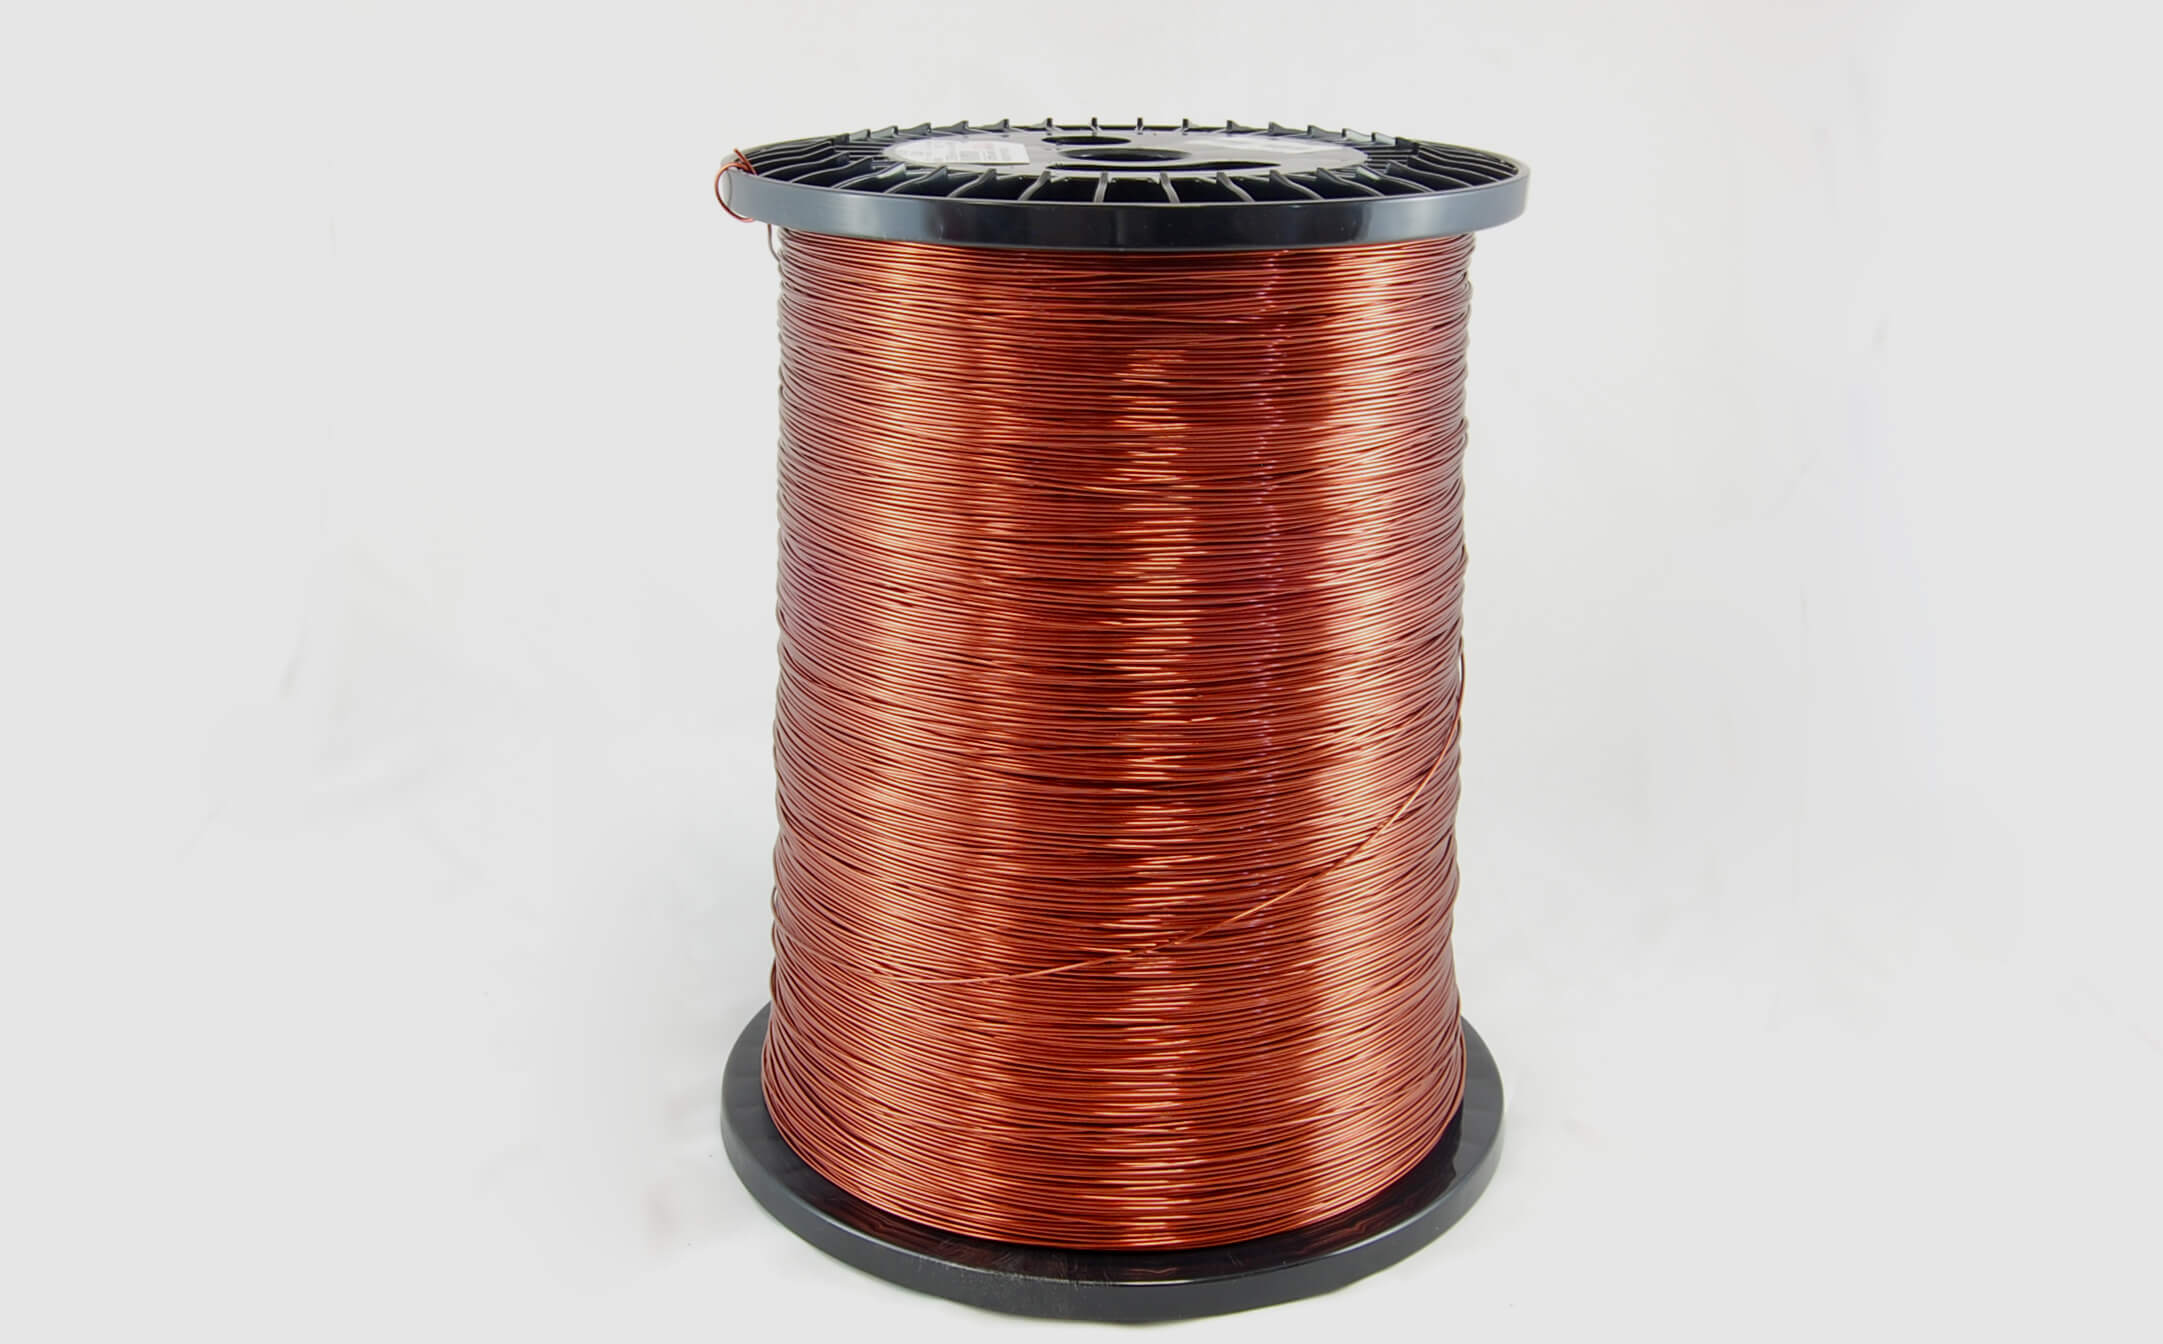 #16 Heavy Super Hyslik 200 Round HTAIH MW 35 Copper Magnet Wire 200°C, copper, 85 LB pail (average wght.)